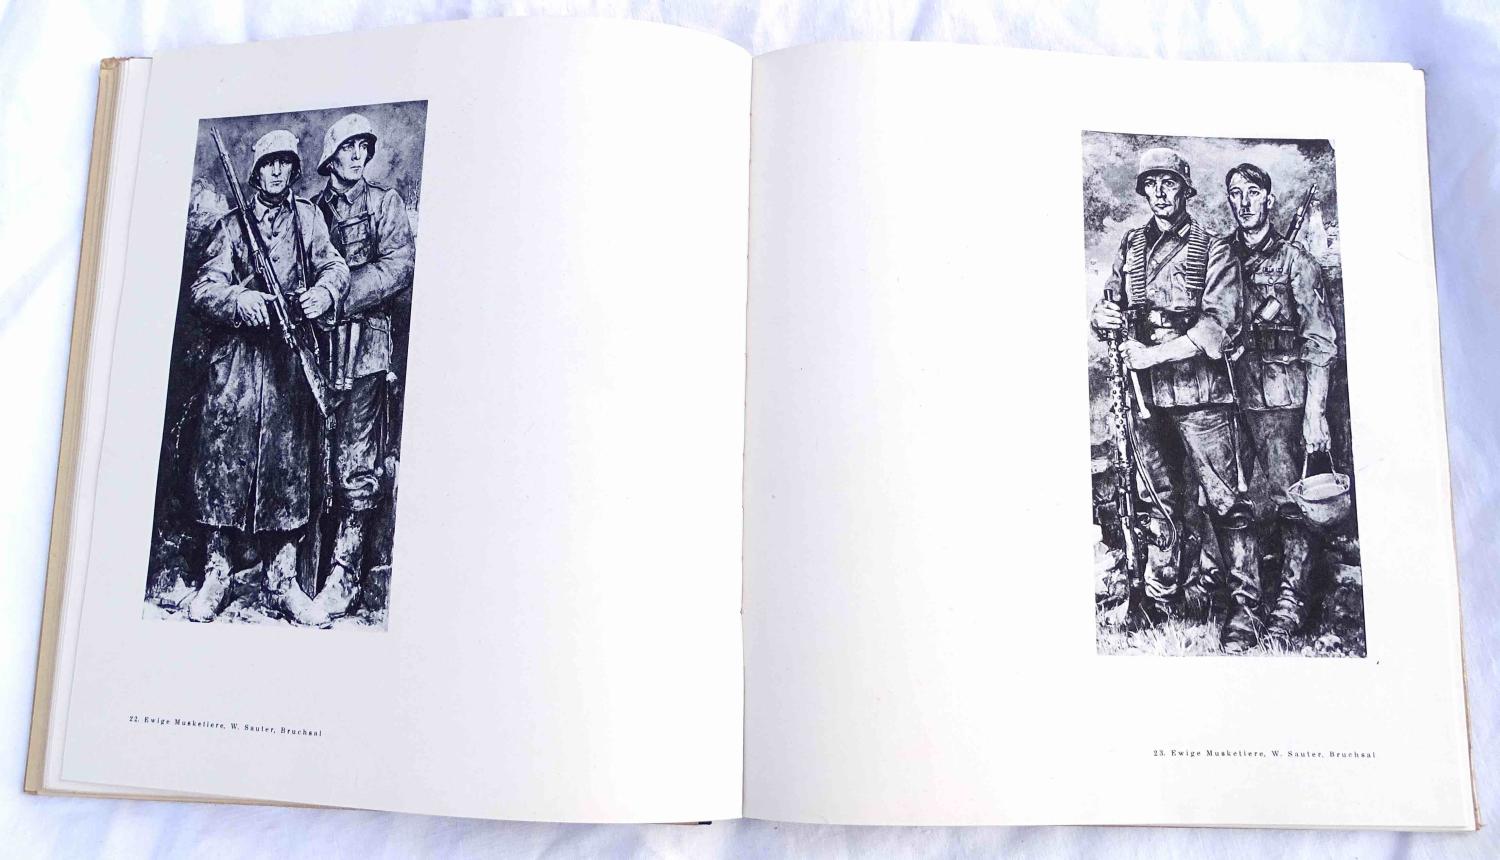 Feuer und farbe   155 bilder vom kriege W. Tr&ouml;ge 1943. Gravures patriotiques allemandes